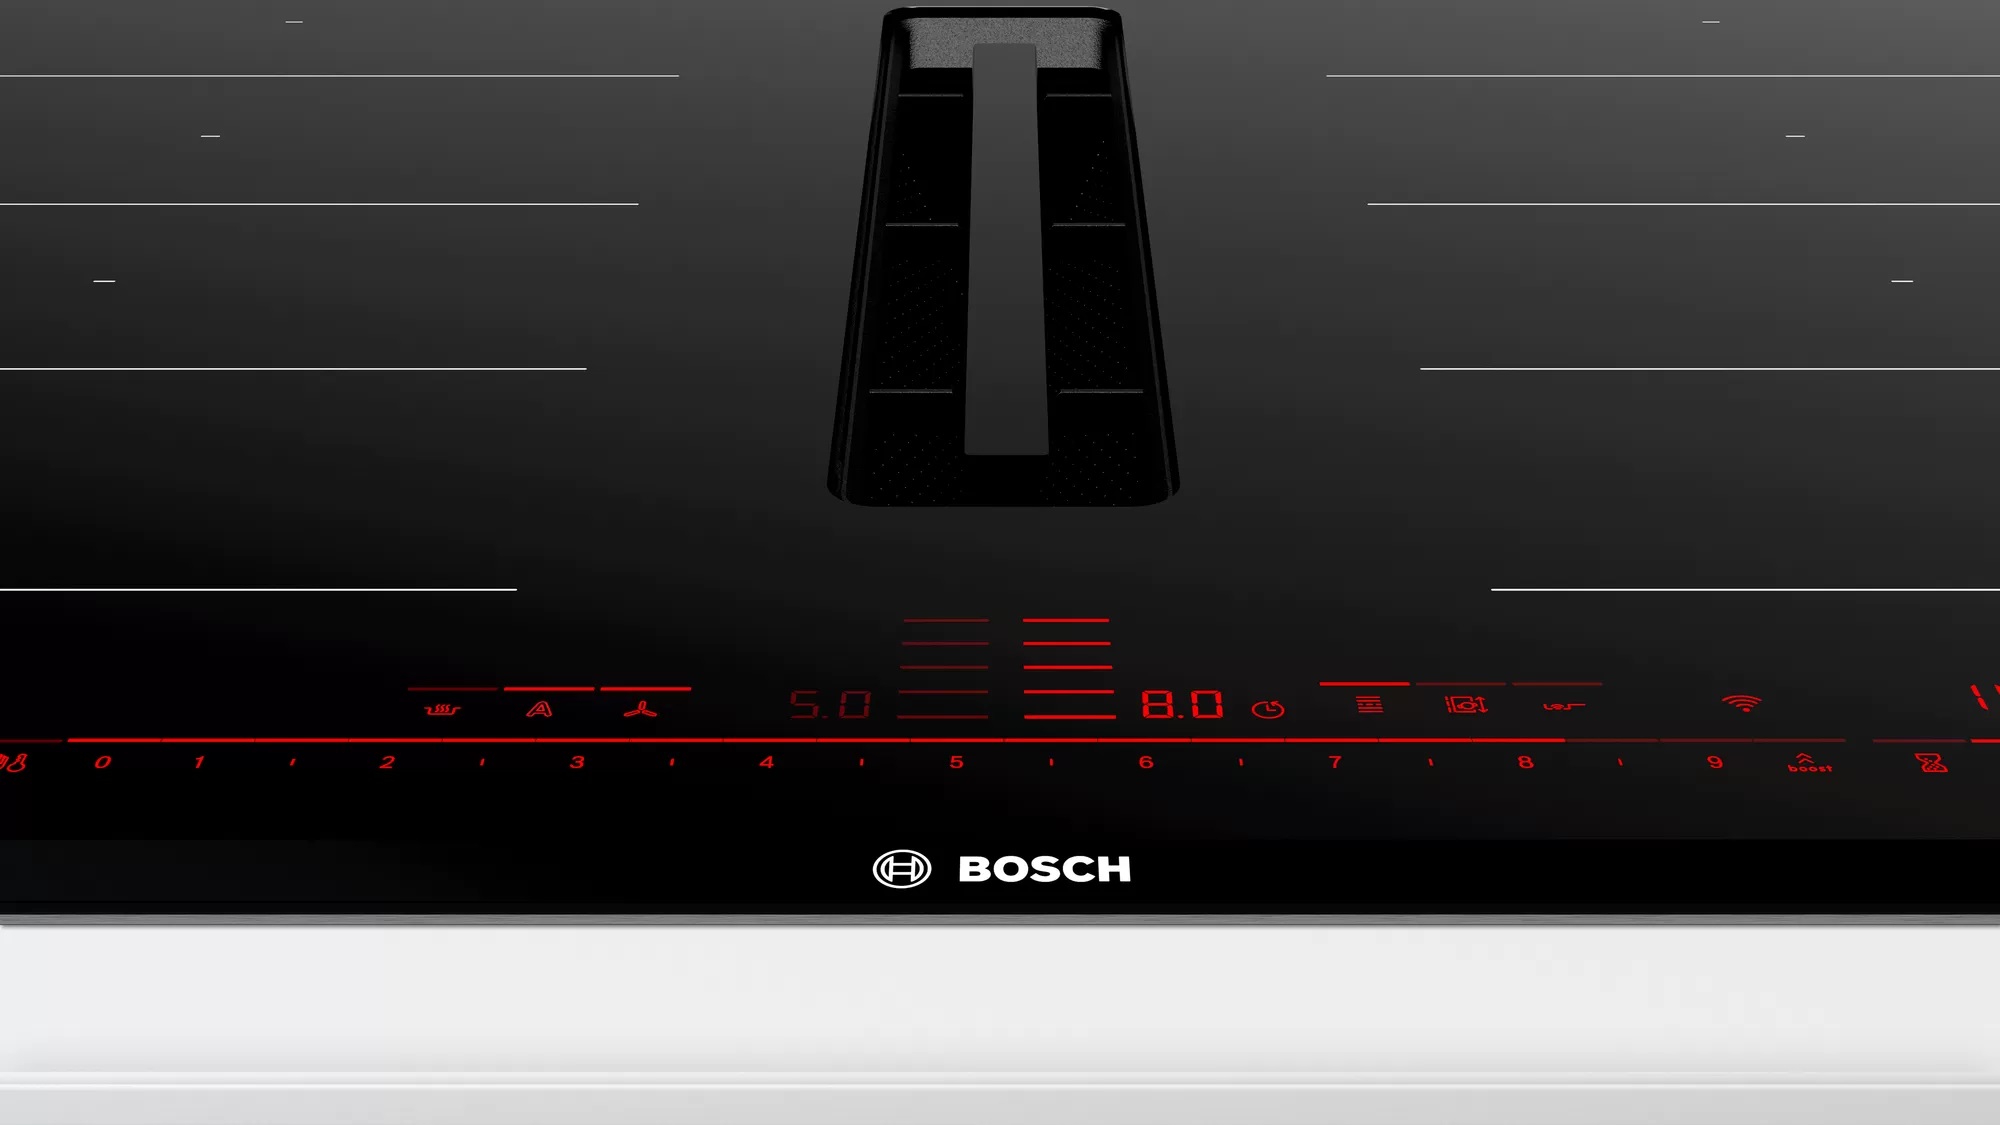 Индукционная панель bosch serie. Варочная поверхность Bosch PXX 875 d67e. Варочная панель Bosch с вытяжкой pxx821d66e. Варочная панель индукционная бош Bosch. Индукционная панель Bosch 875.